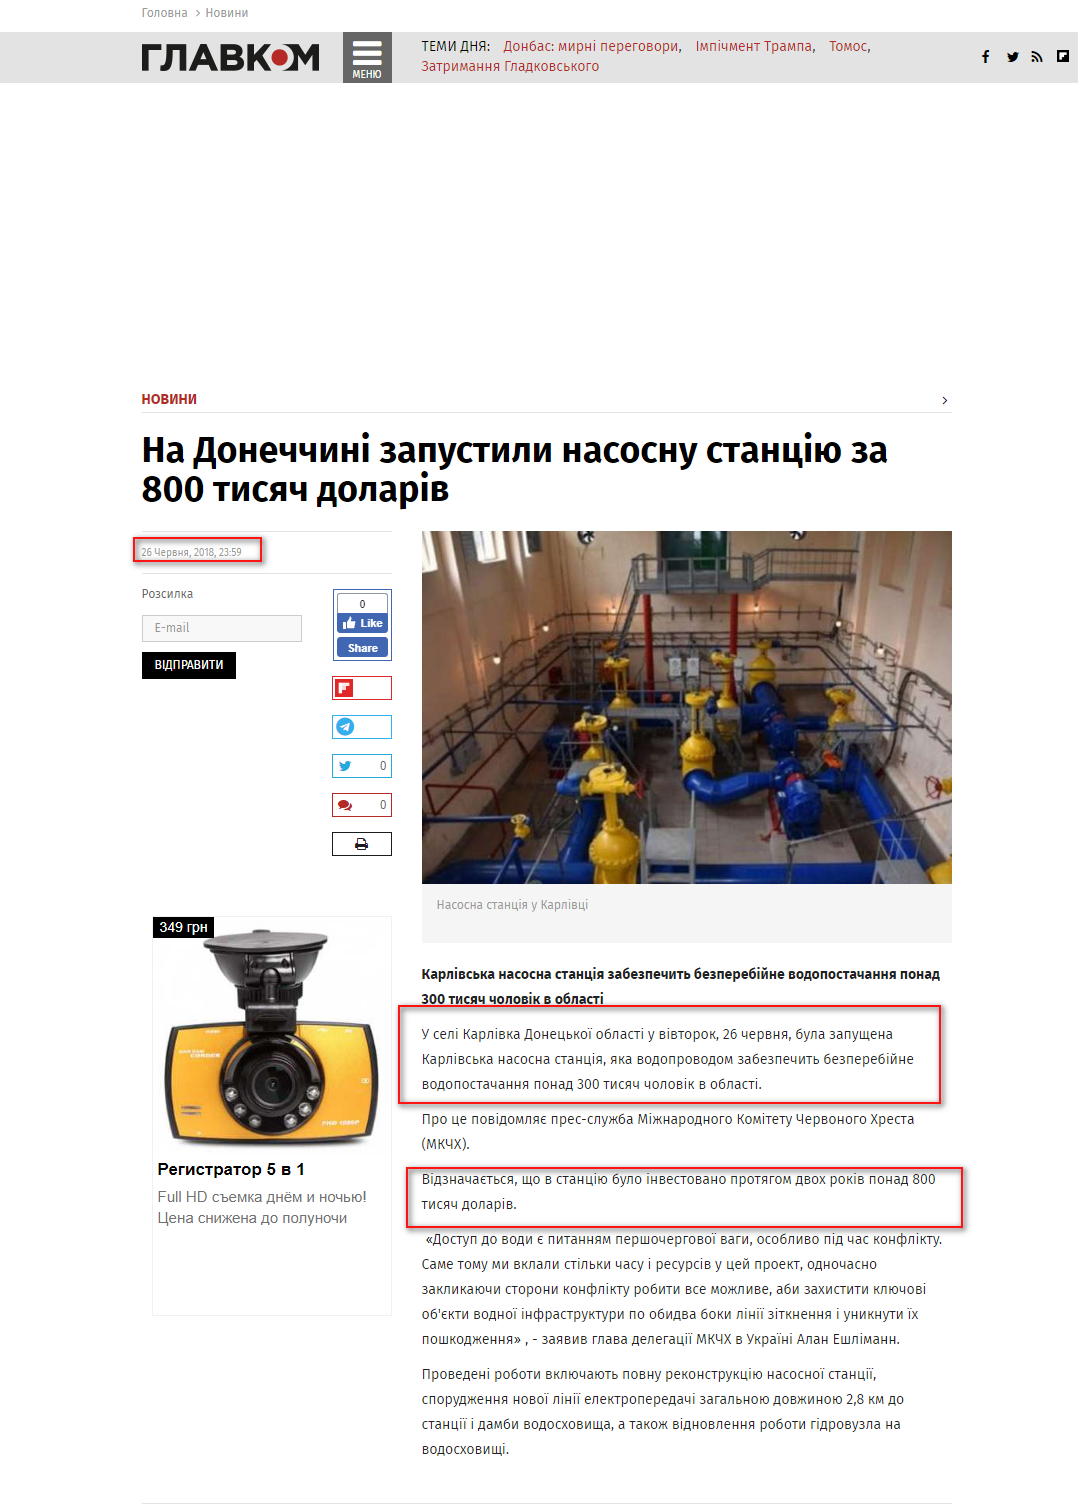 https://glavcom.ua/news/na-donechchini-zapustili-nasosnu-stanciyu-za-800-tisyach-dolariv-508386.html